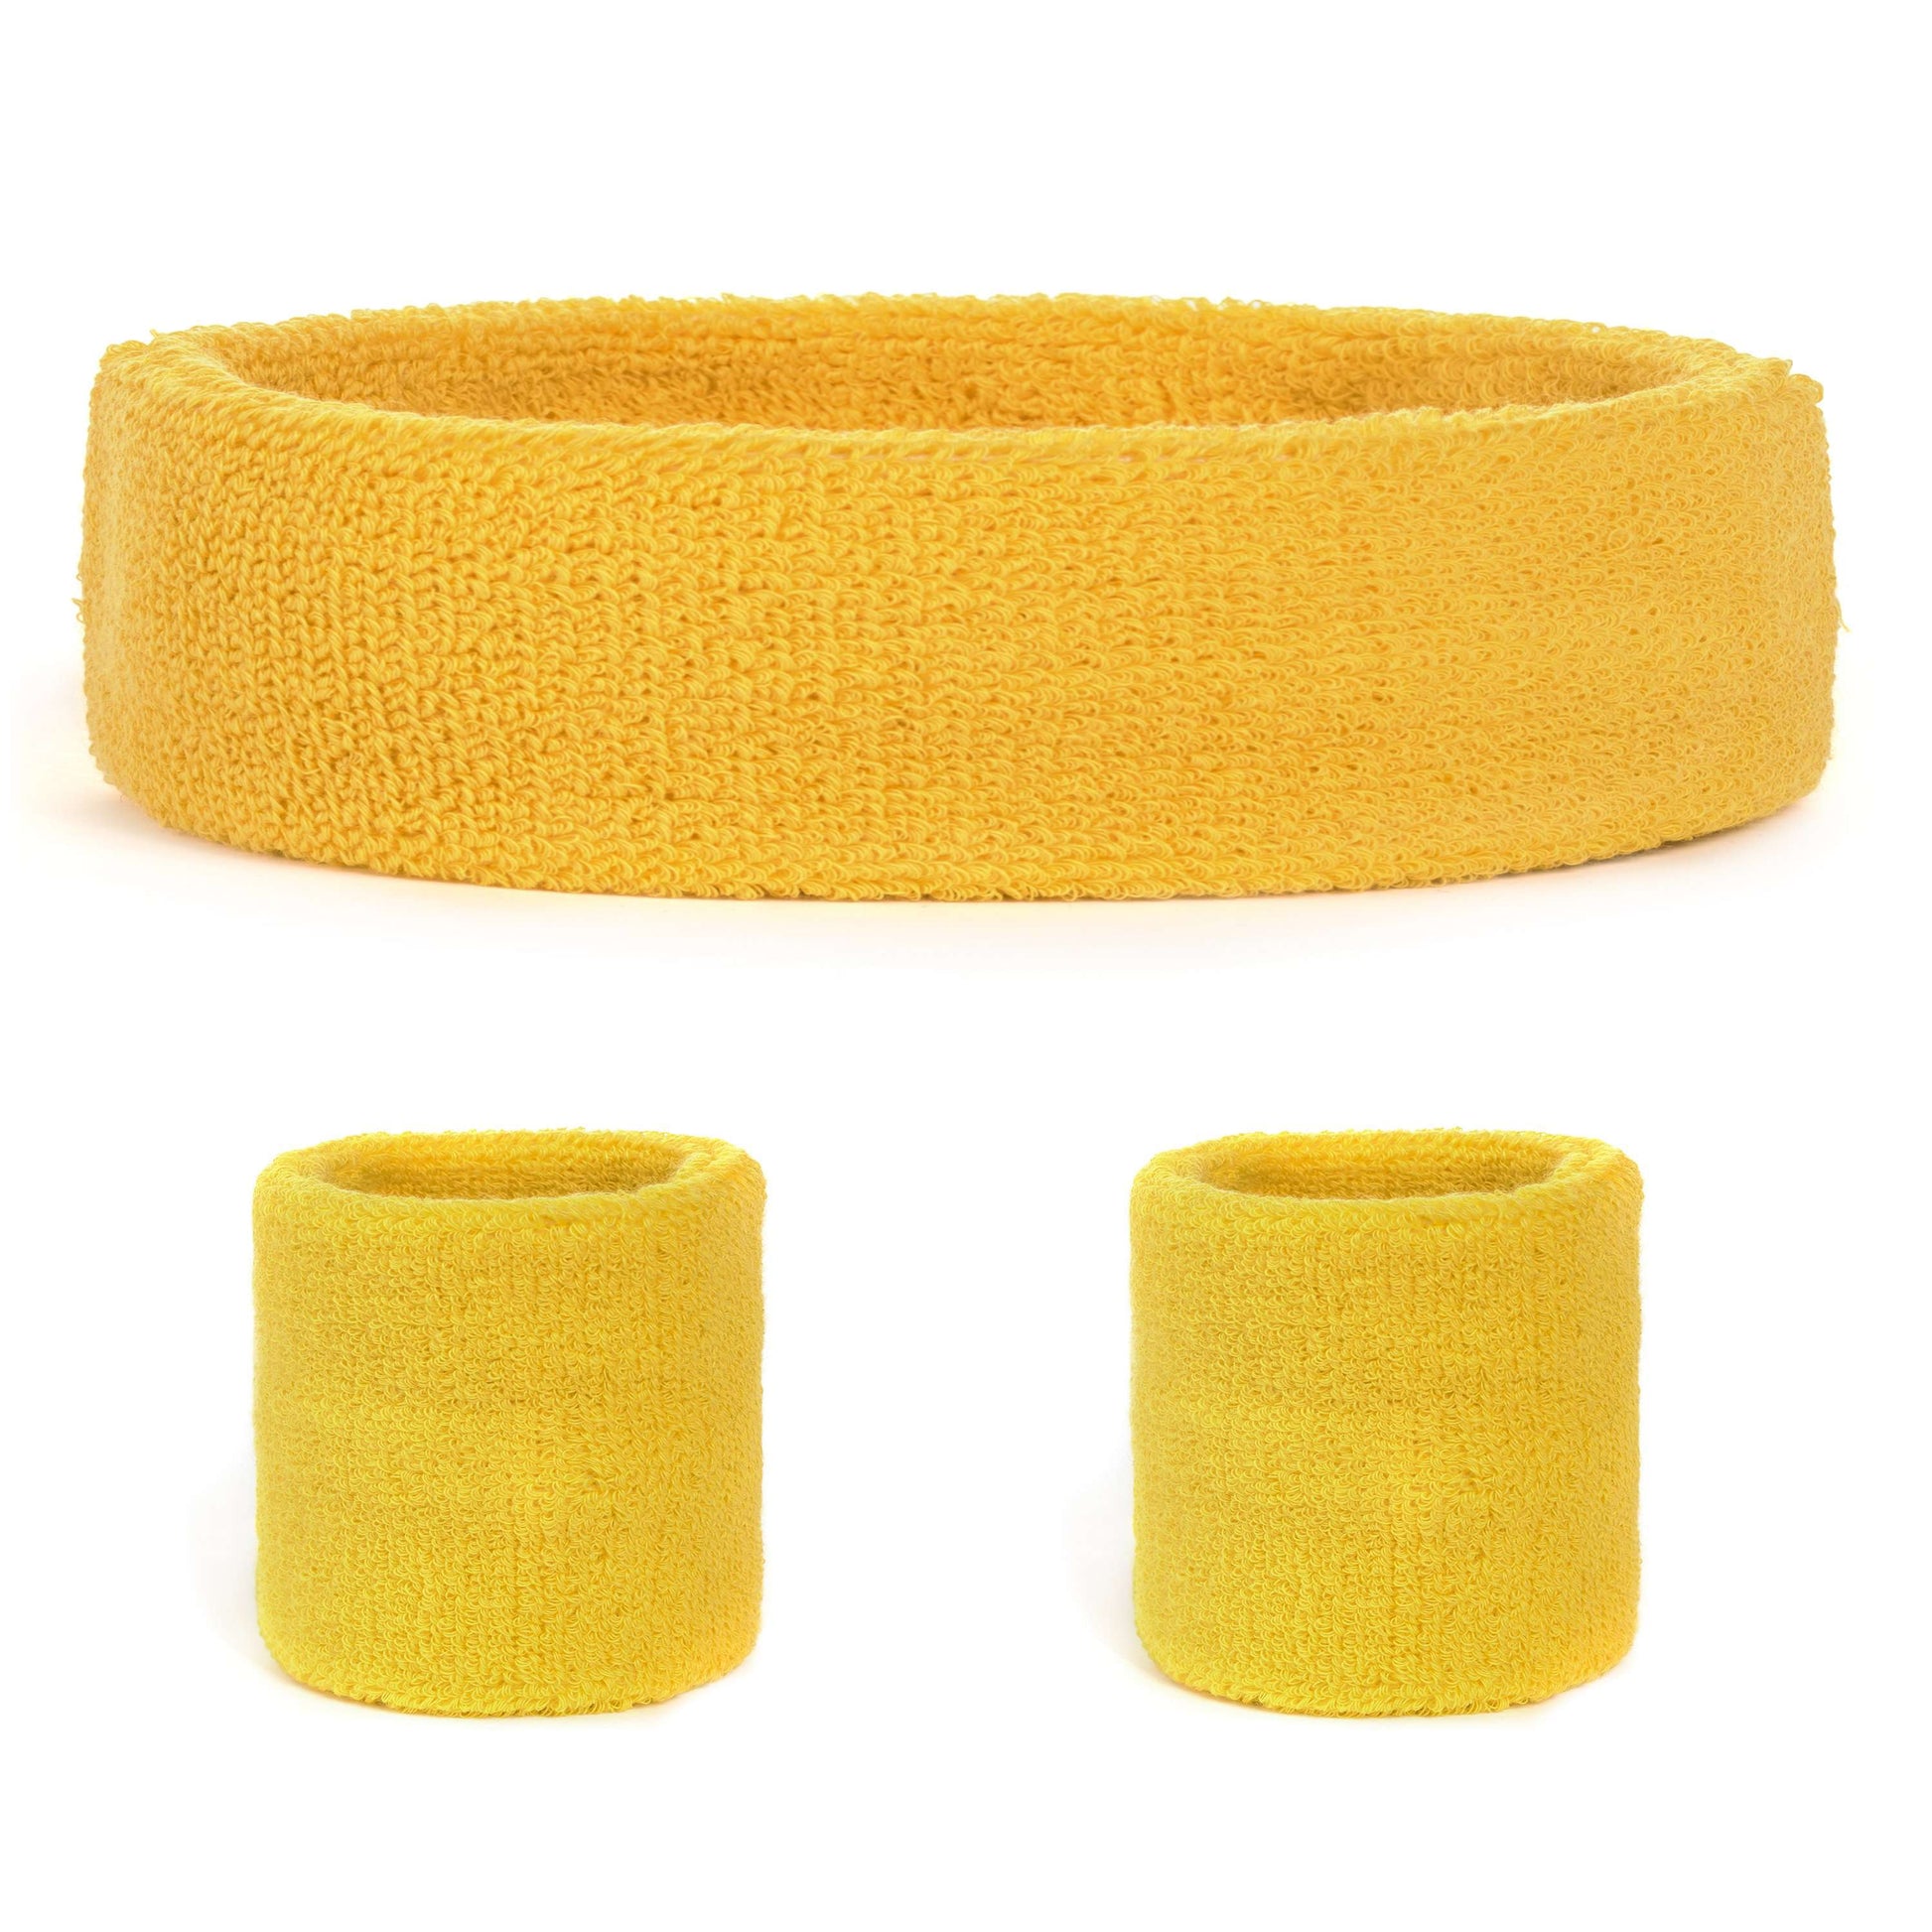 Suddora Sweatband Set (1 Headband & 2 Wristbands) - Yellow